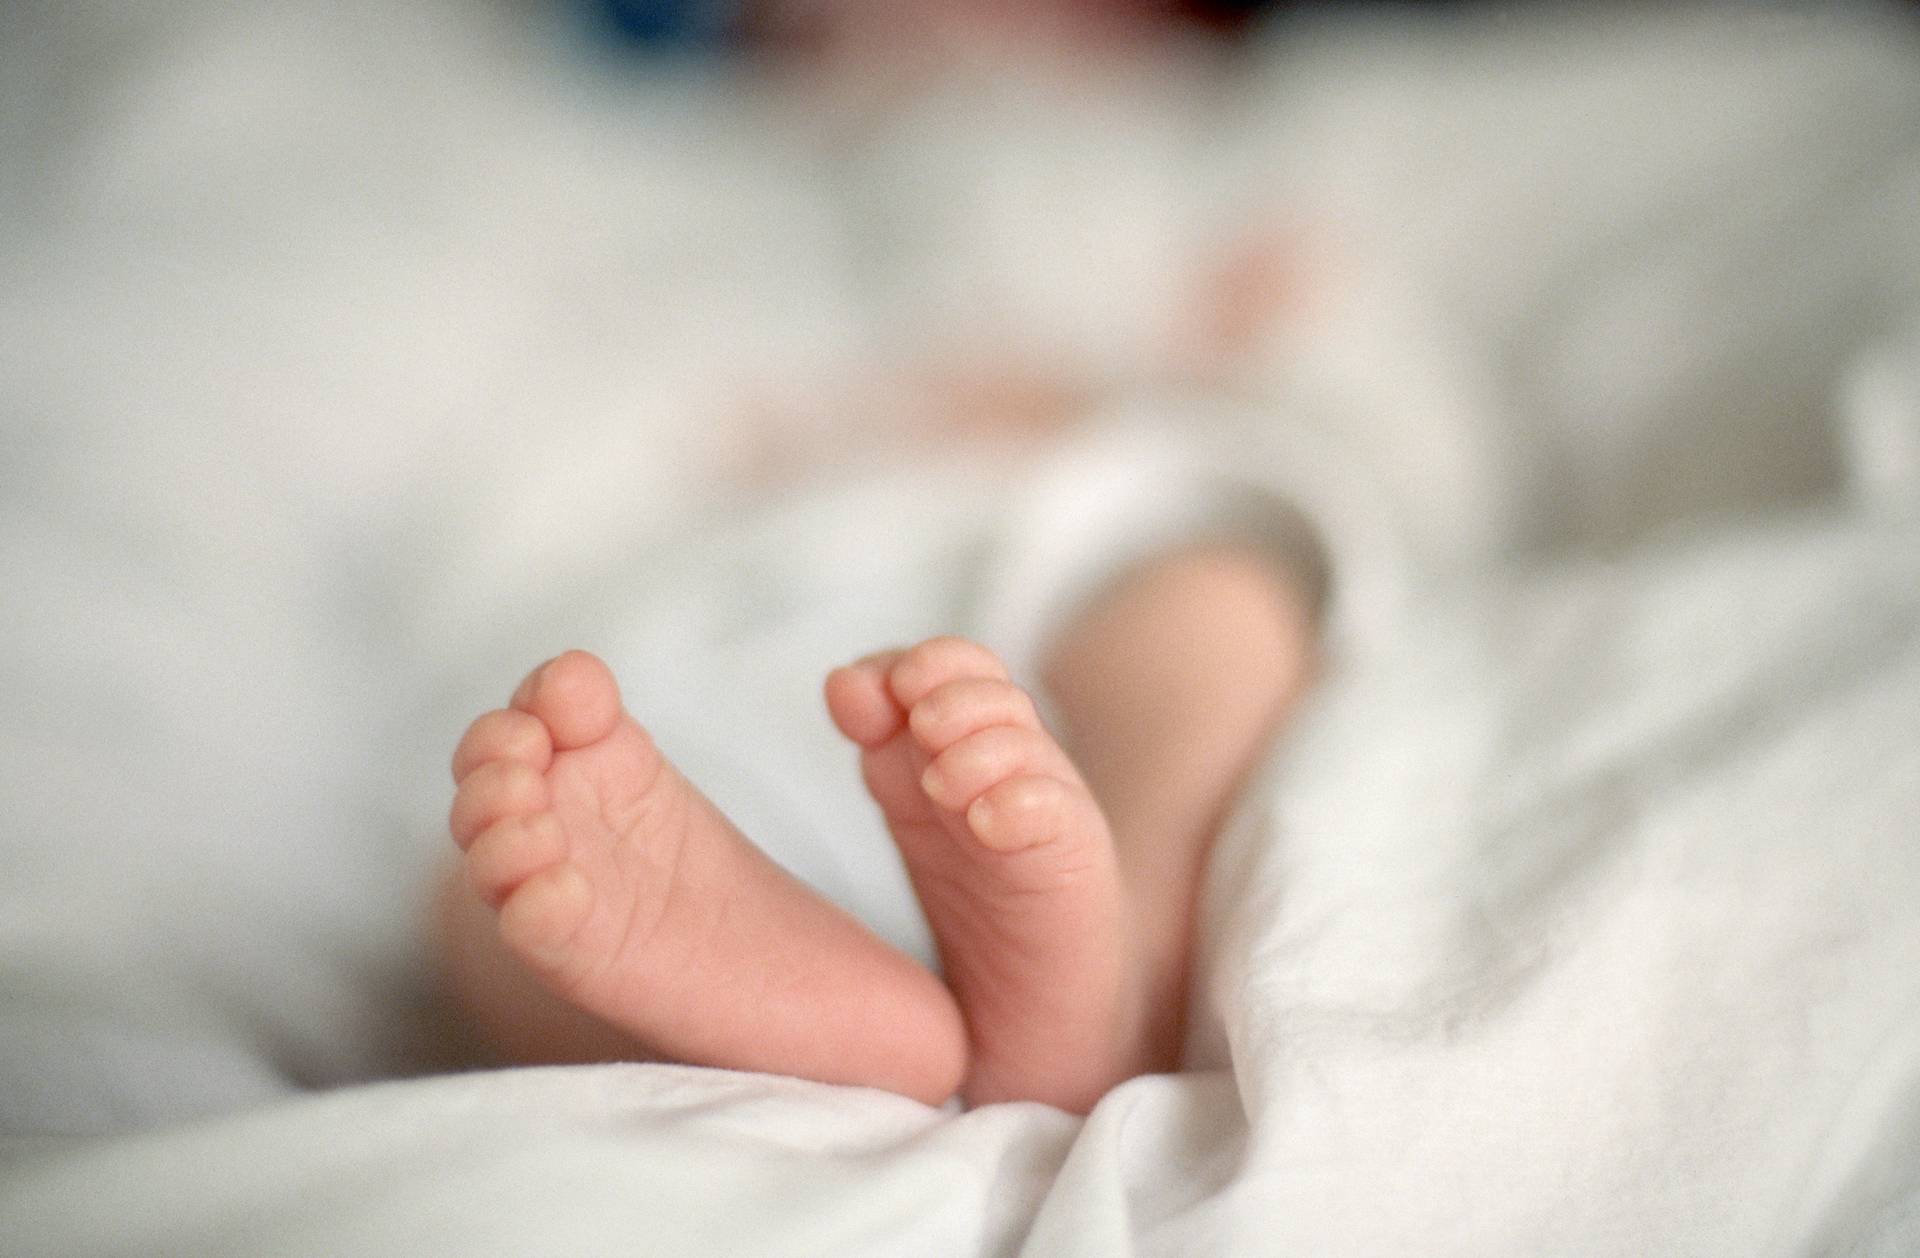 Csecsemő a Heim Pál kórház inkubátorában